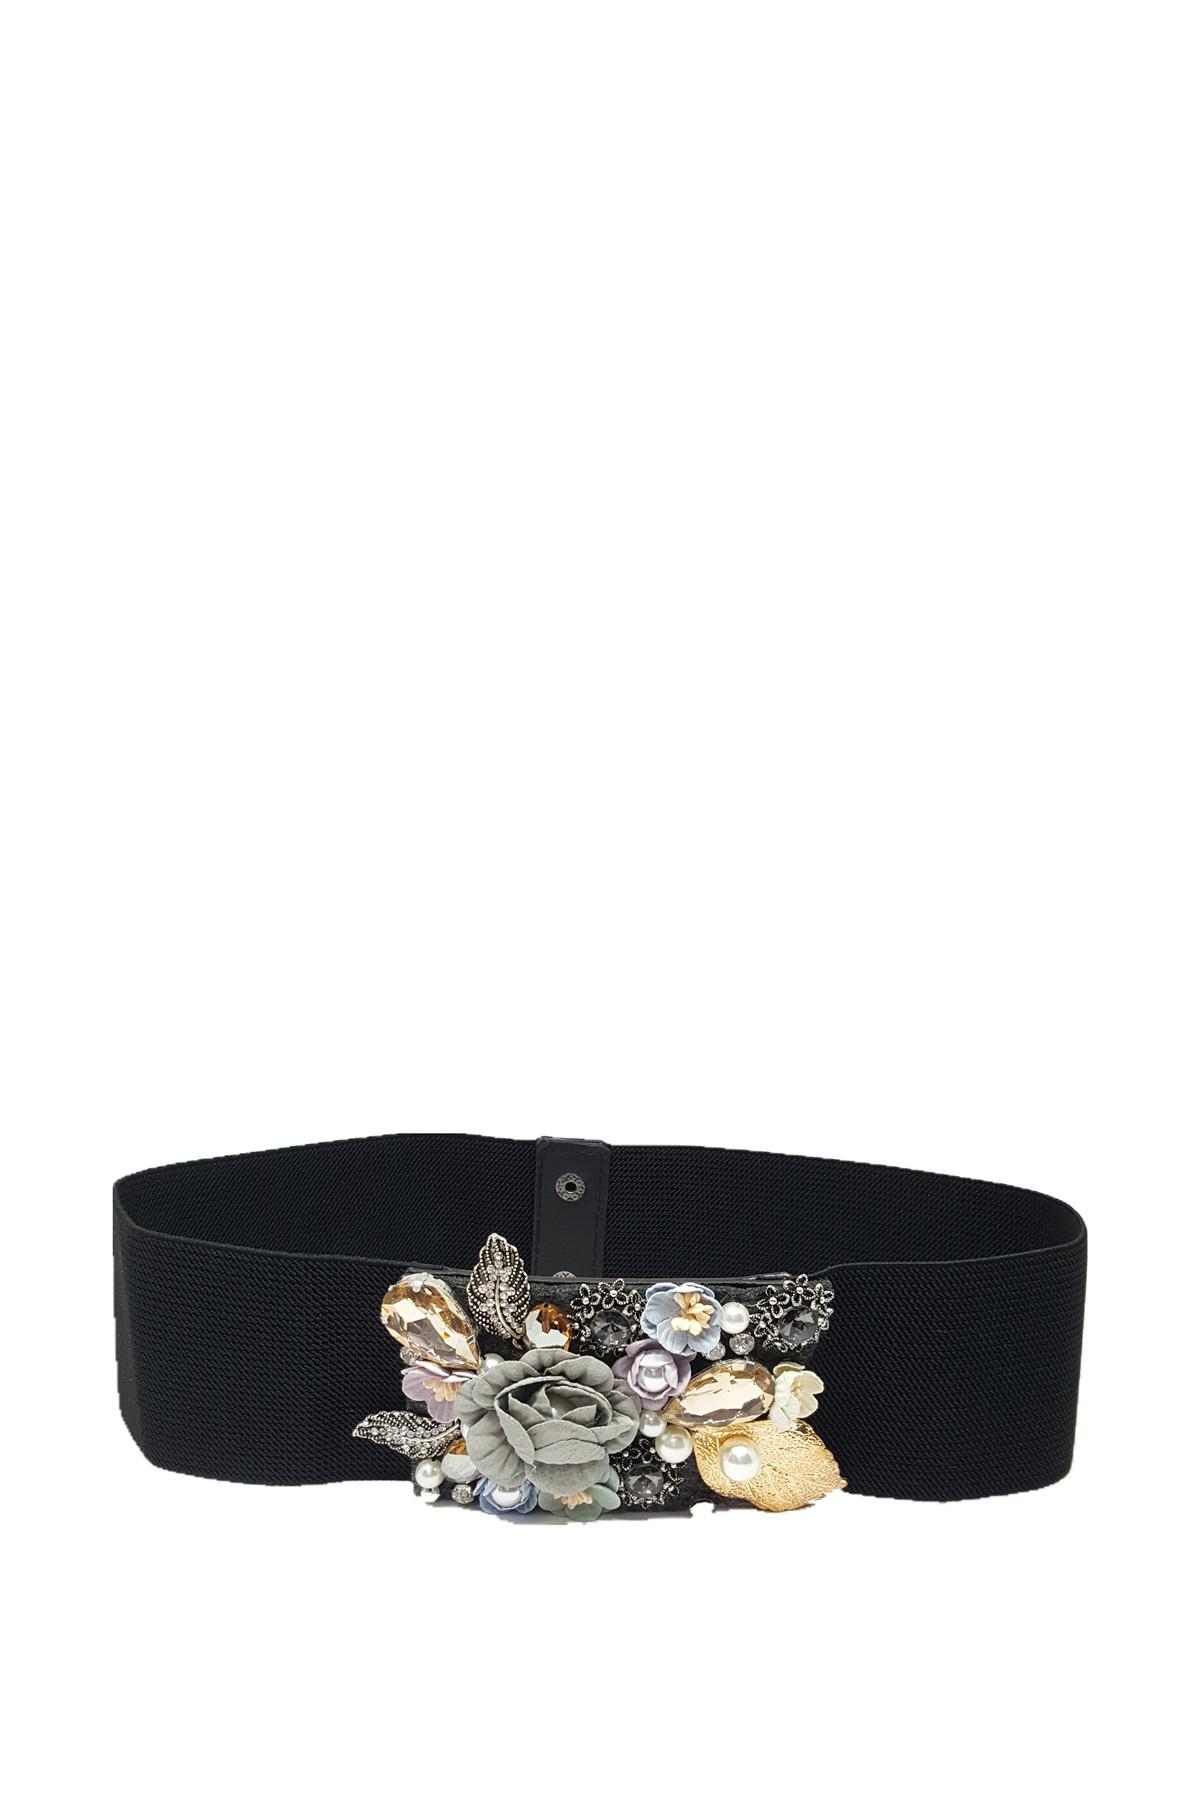 Belts Accessories Black BEST ANGEL SA1541 #c Efashion Paris